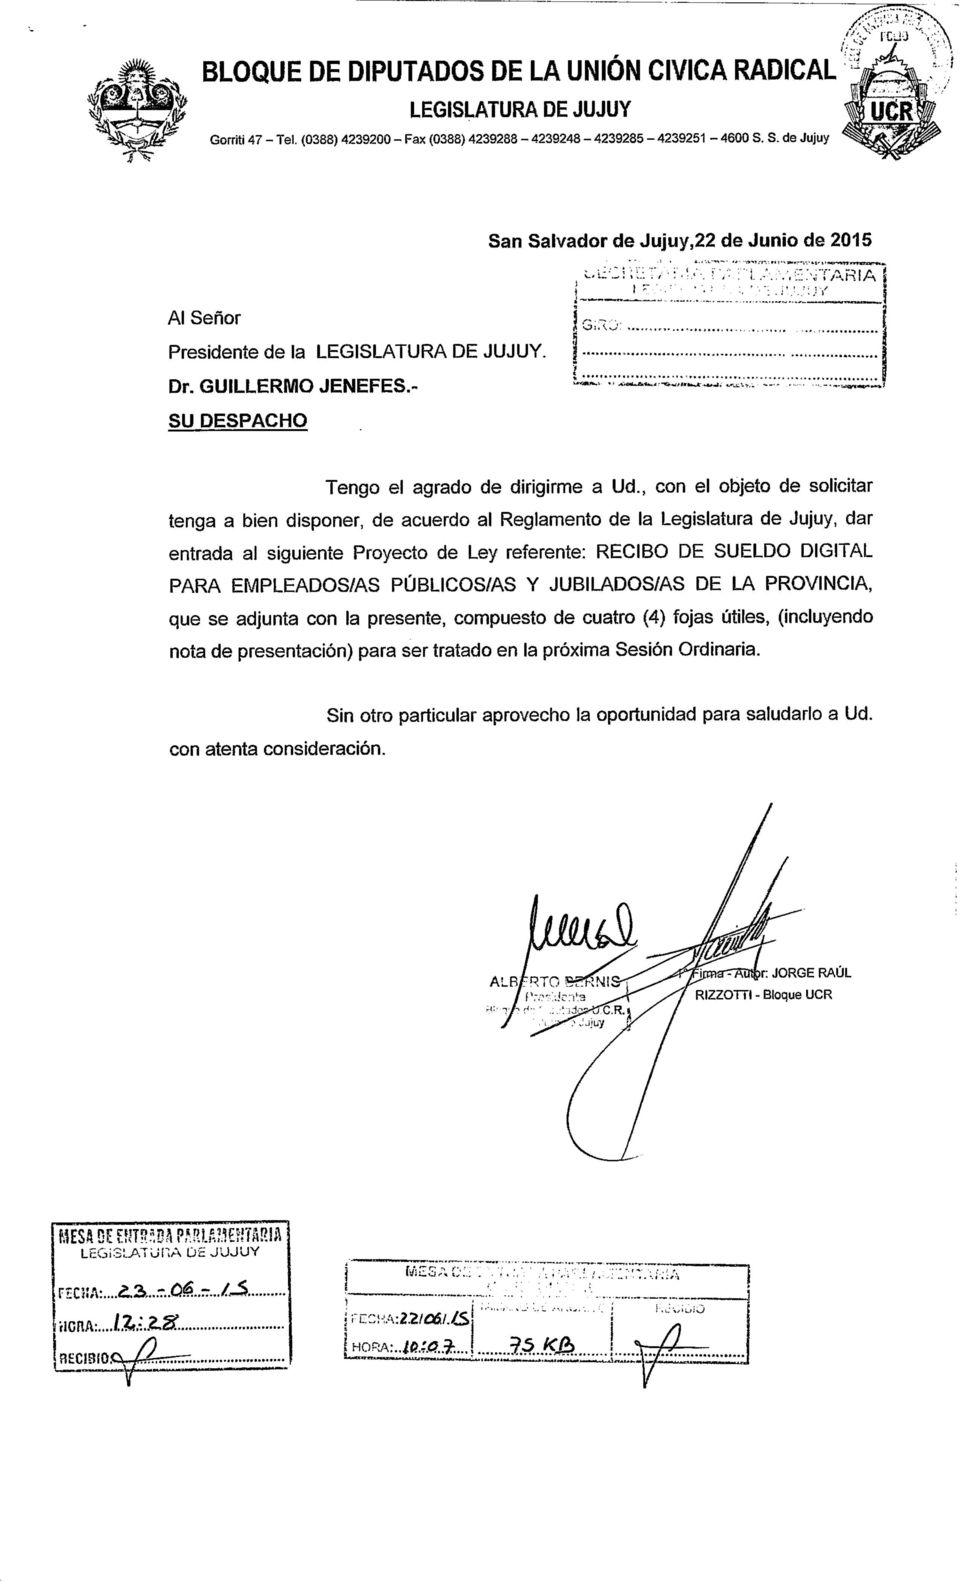 , con el objeto de solicitar tenga a bien disponer, de acuerdo al Reglamento de la Legislatura de Jujuy, dar entrada al siguiente Proyecto de Ley referente: RECIBO DE SUELDO DIGITAL PARA EMPLEADOS/AS